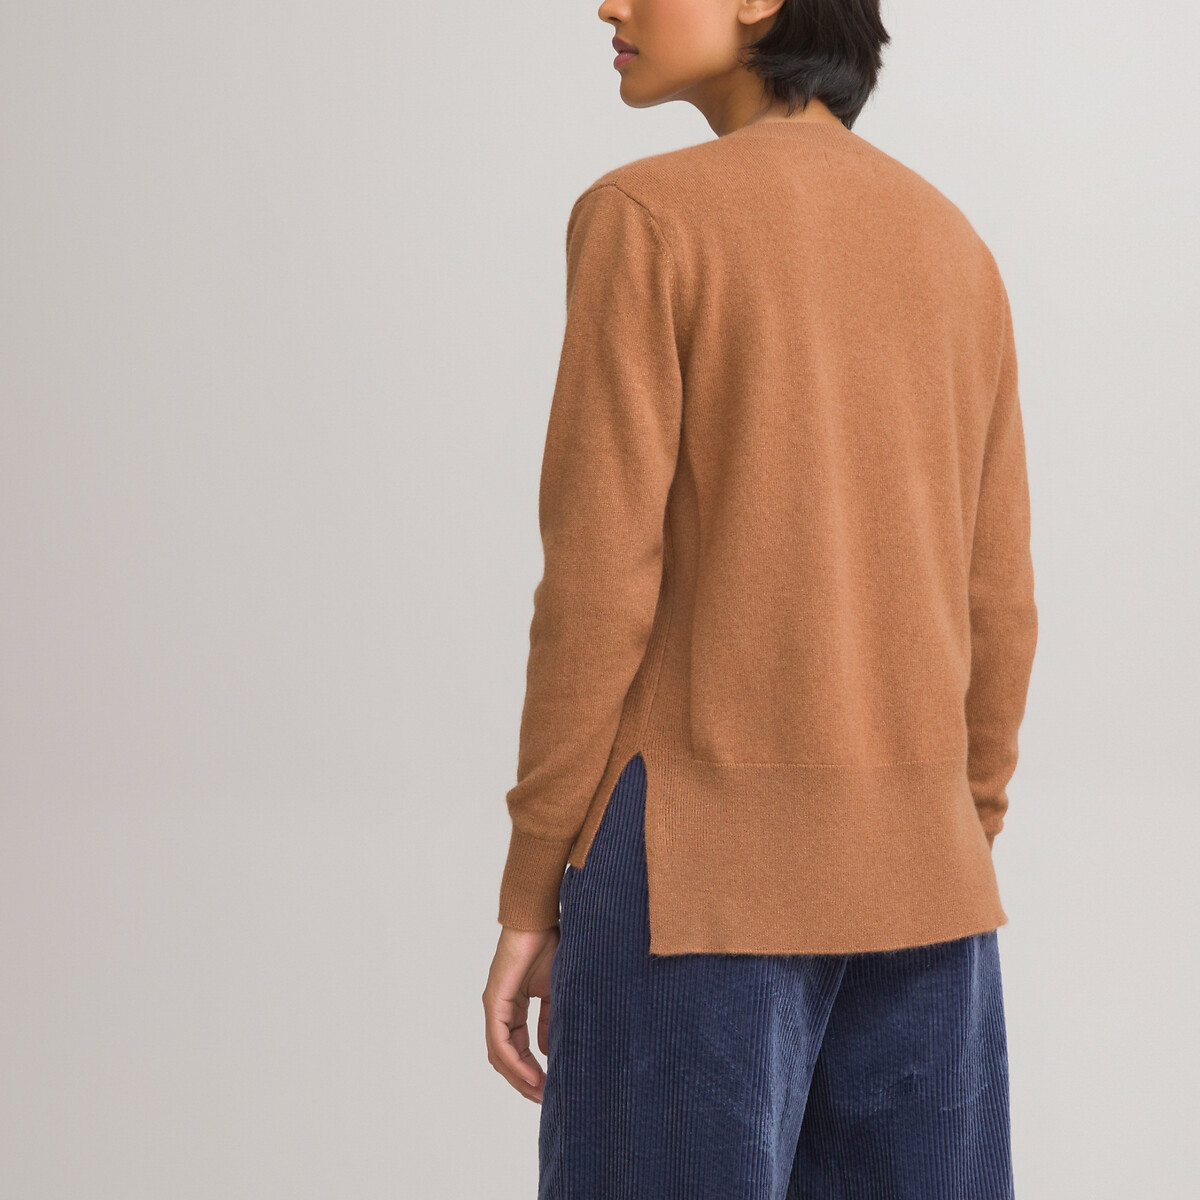 Пуловер LaRedoute С V-образным вырезом из кашемира тонкий трикотаж XXL каштановый, размер XXL - фото 4